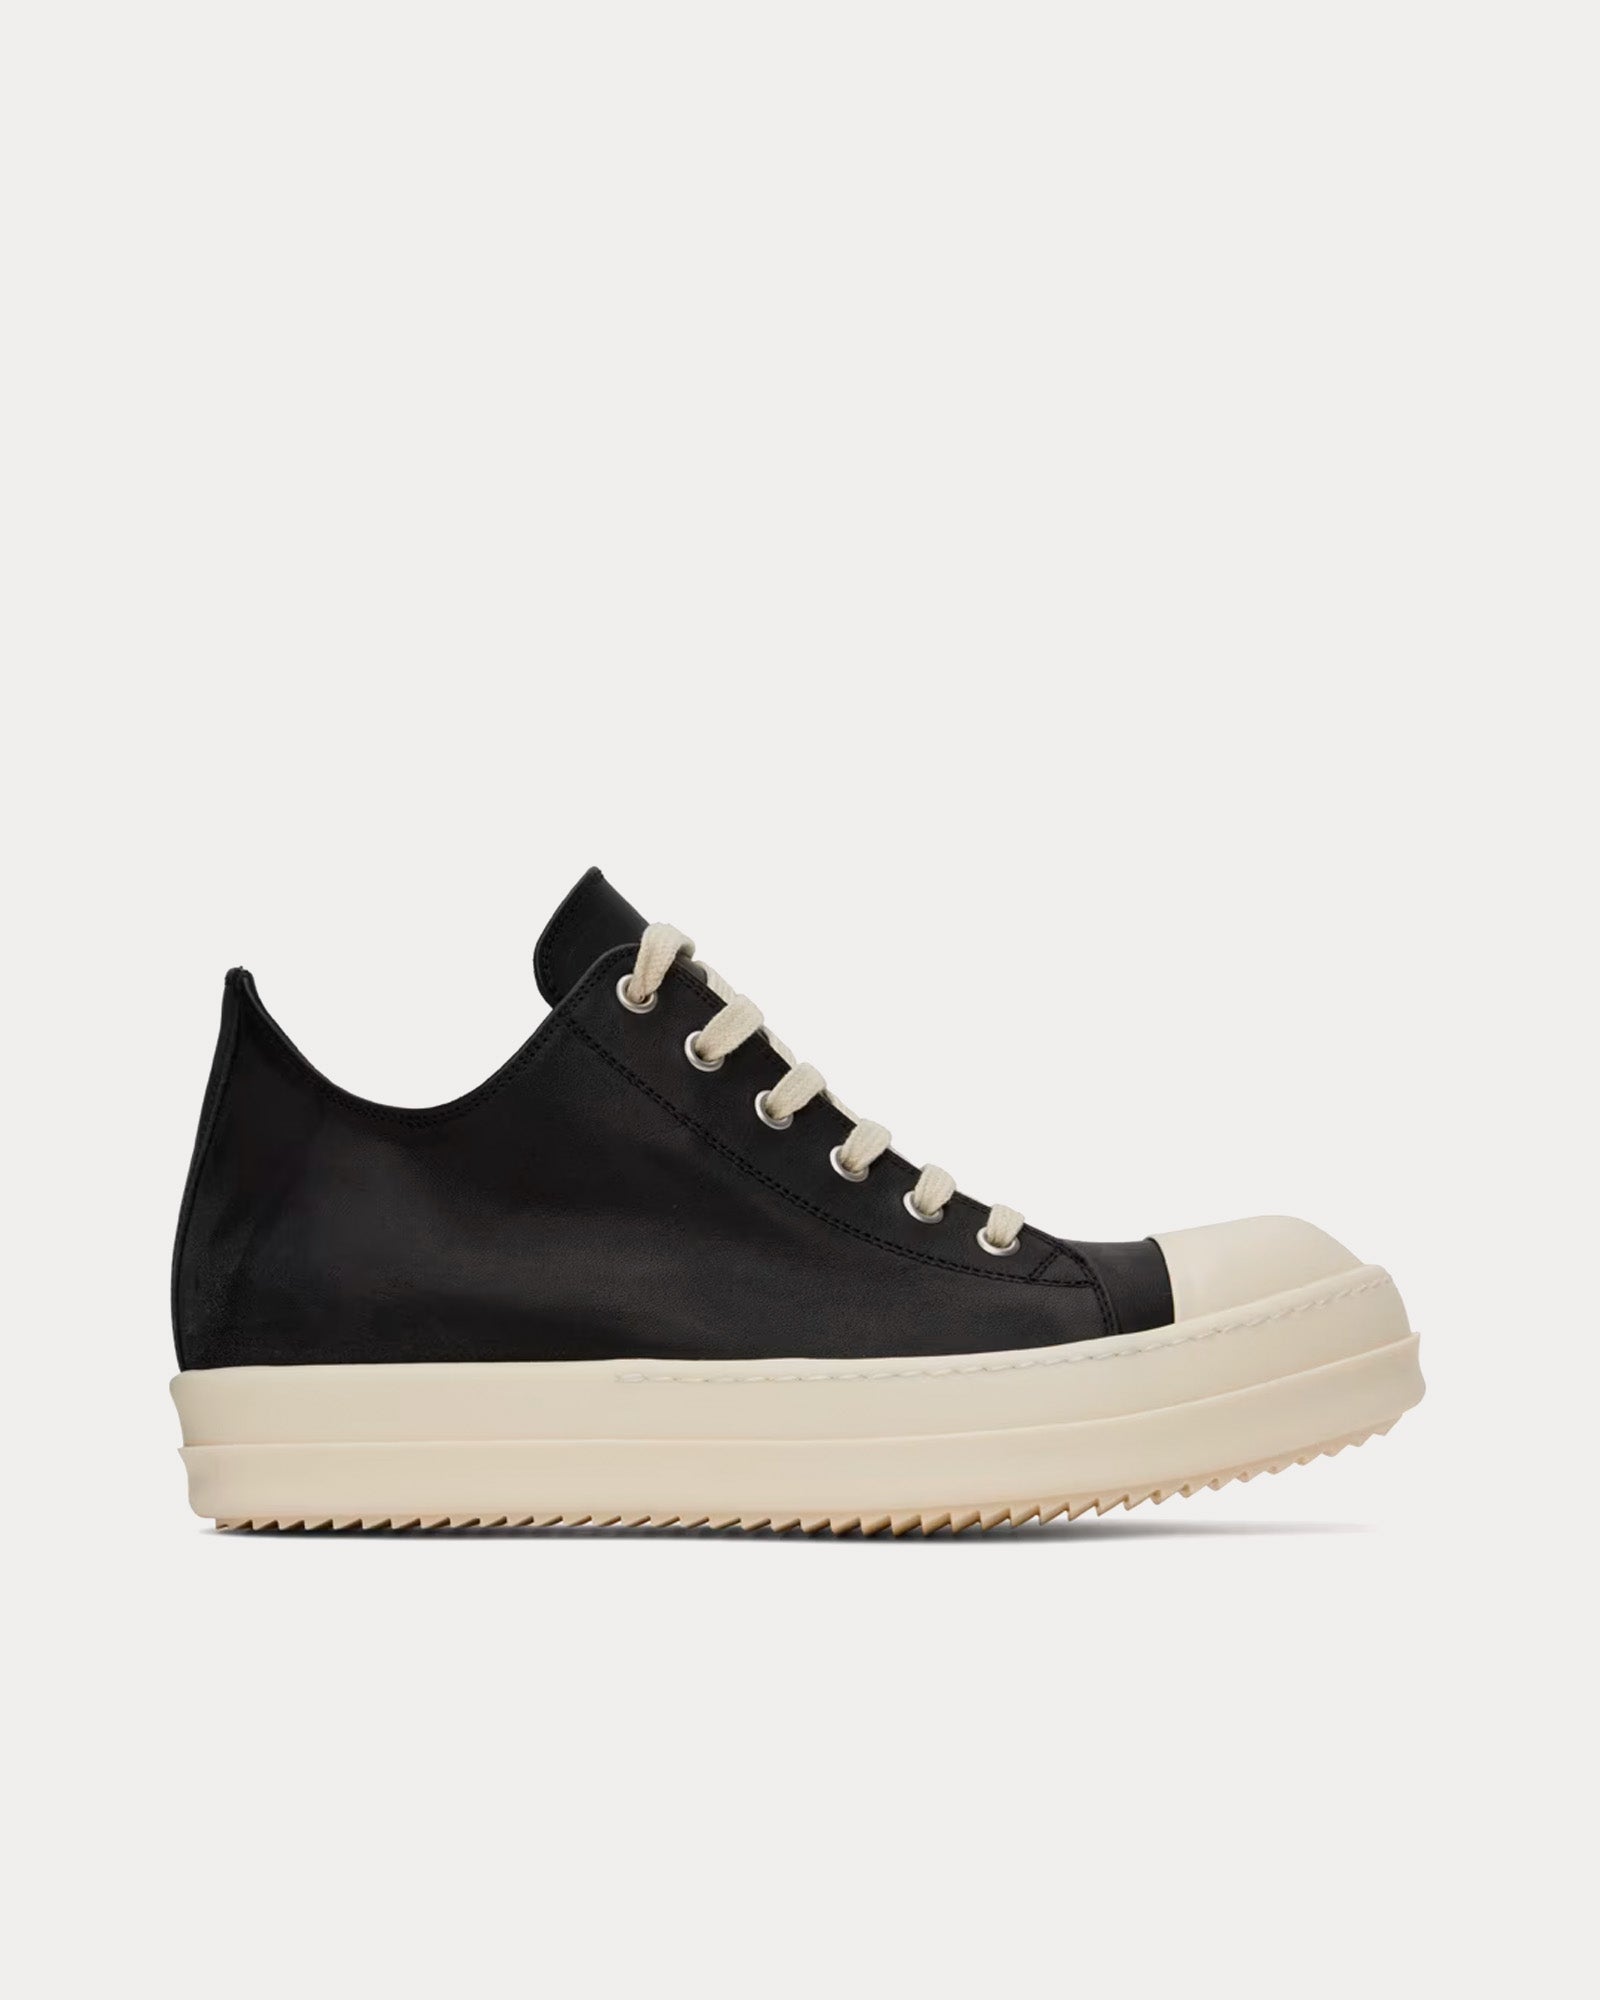 Rick Owens - Leather Black / Milk Low Top Sneakers